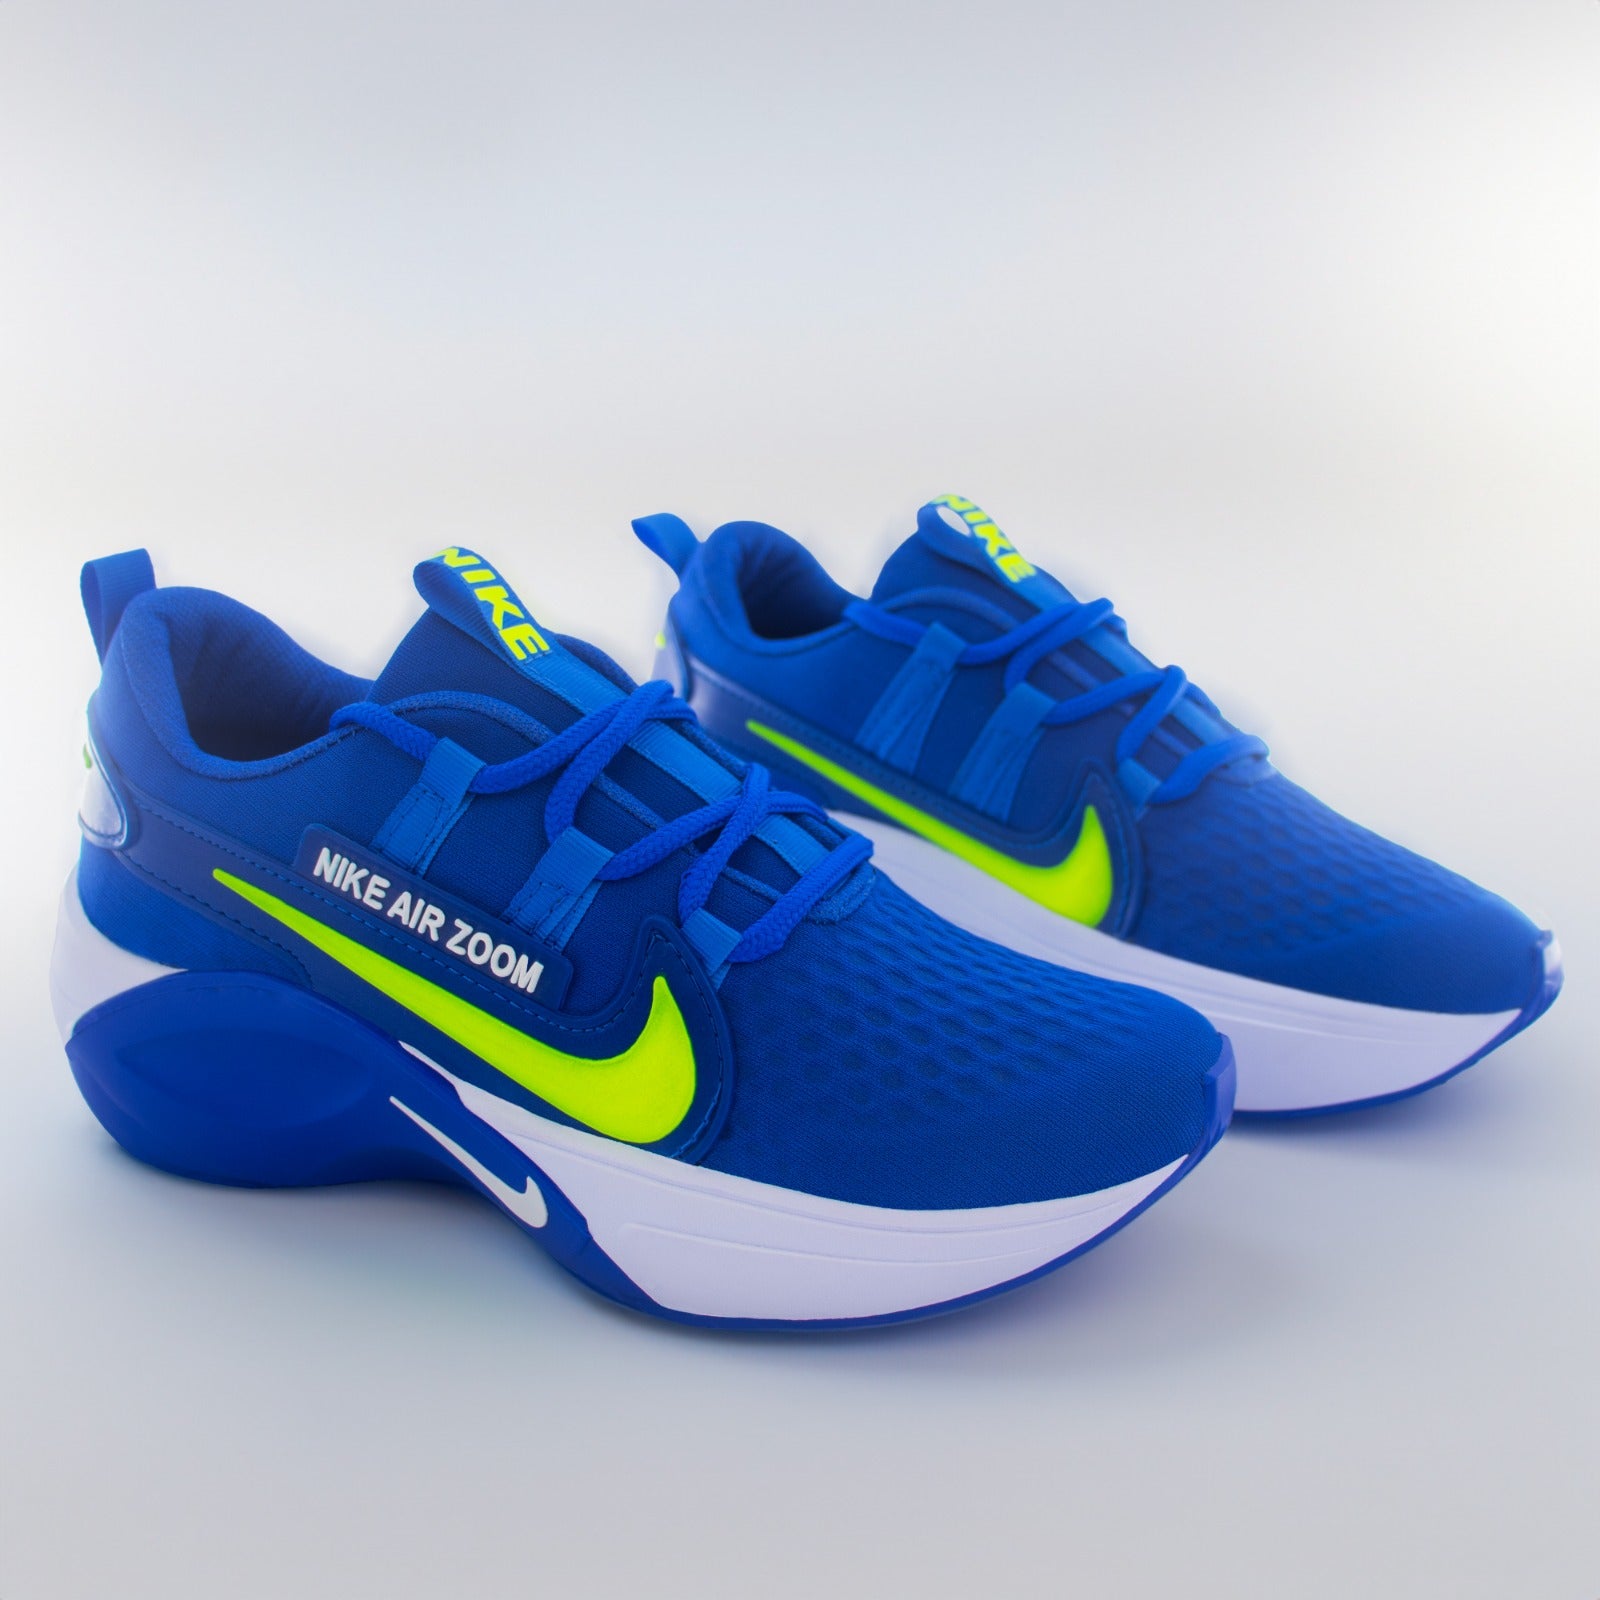 👟 ¡Destaca con estilo en cada paso con los nuevos Tenis Nike Azul! 👟